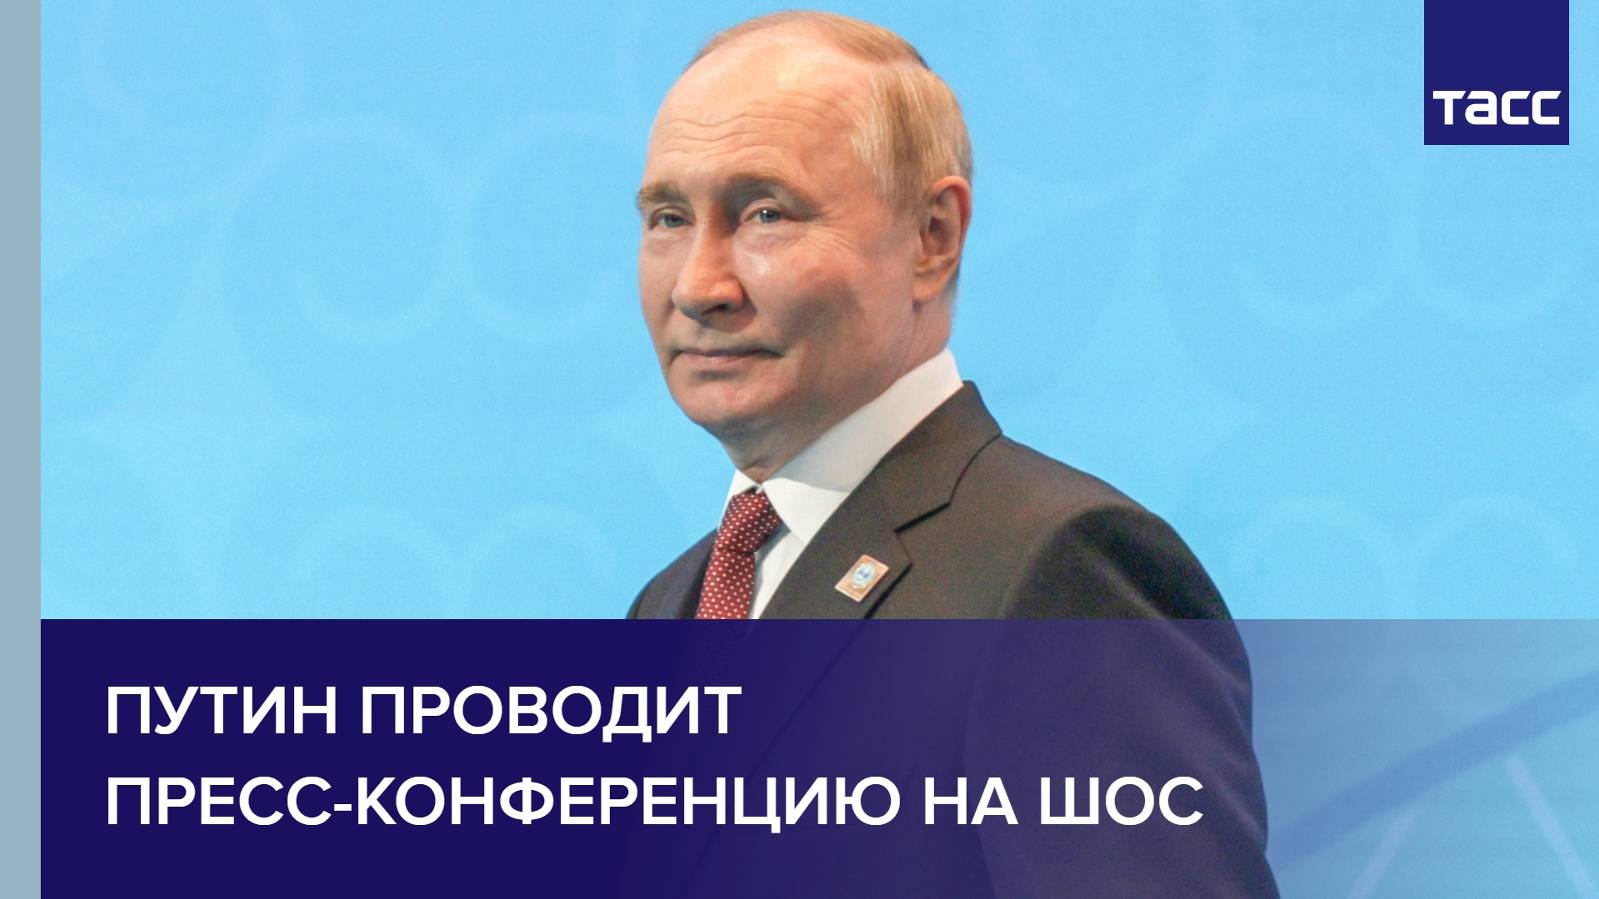 Путин проводит пресс-конференцию на ШОС